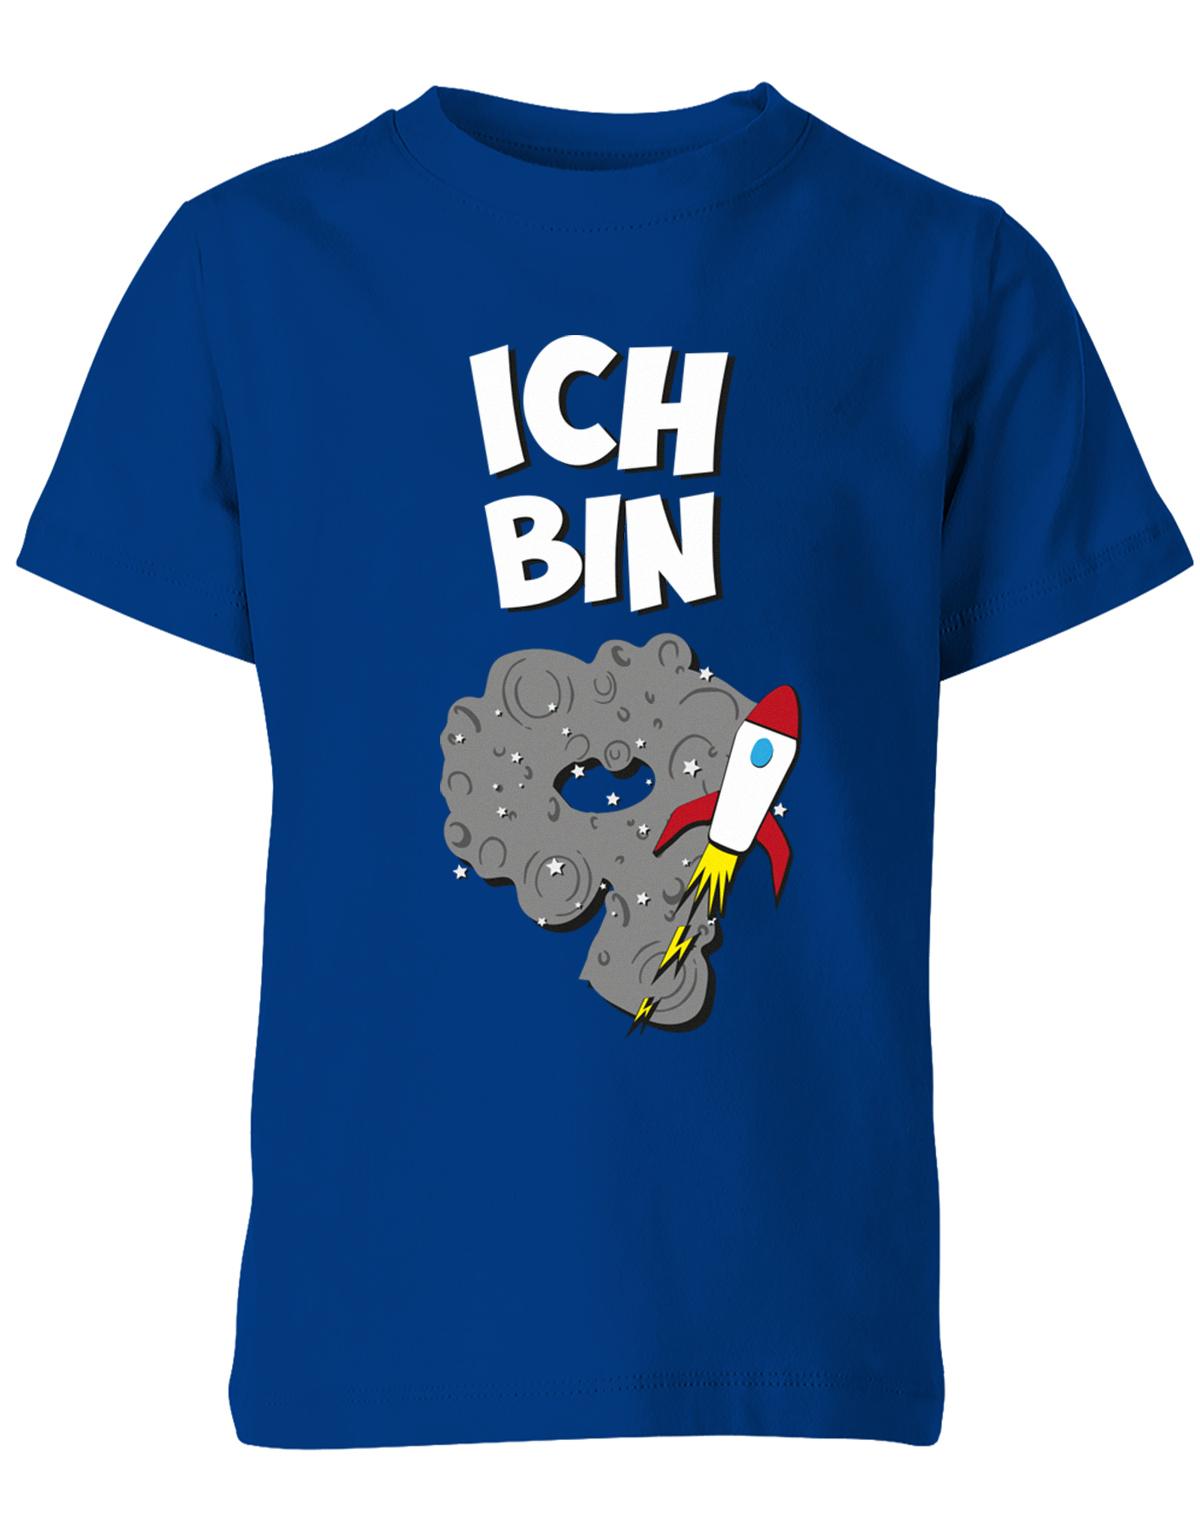 ich-bin-9-weltraum-rakete-planet-geburtstag-kinder-shirt-royalblau